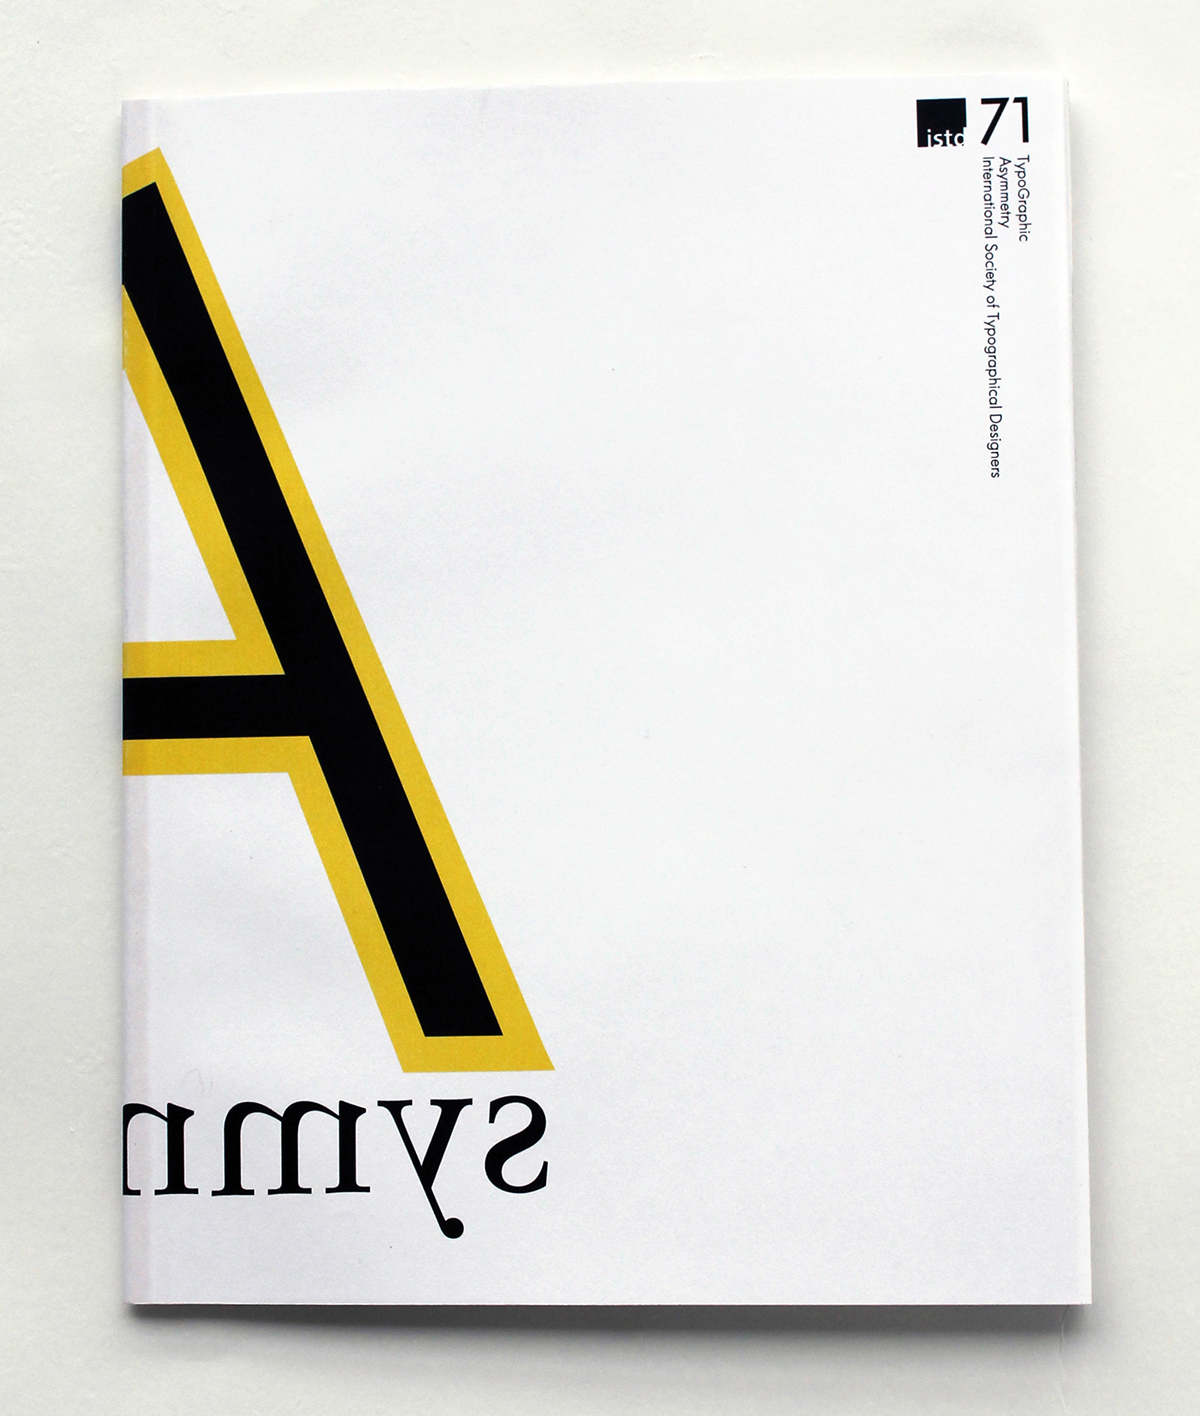 #editorialdesign #publishing  #typography #layout